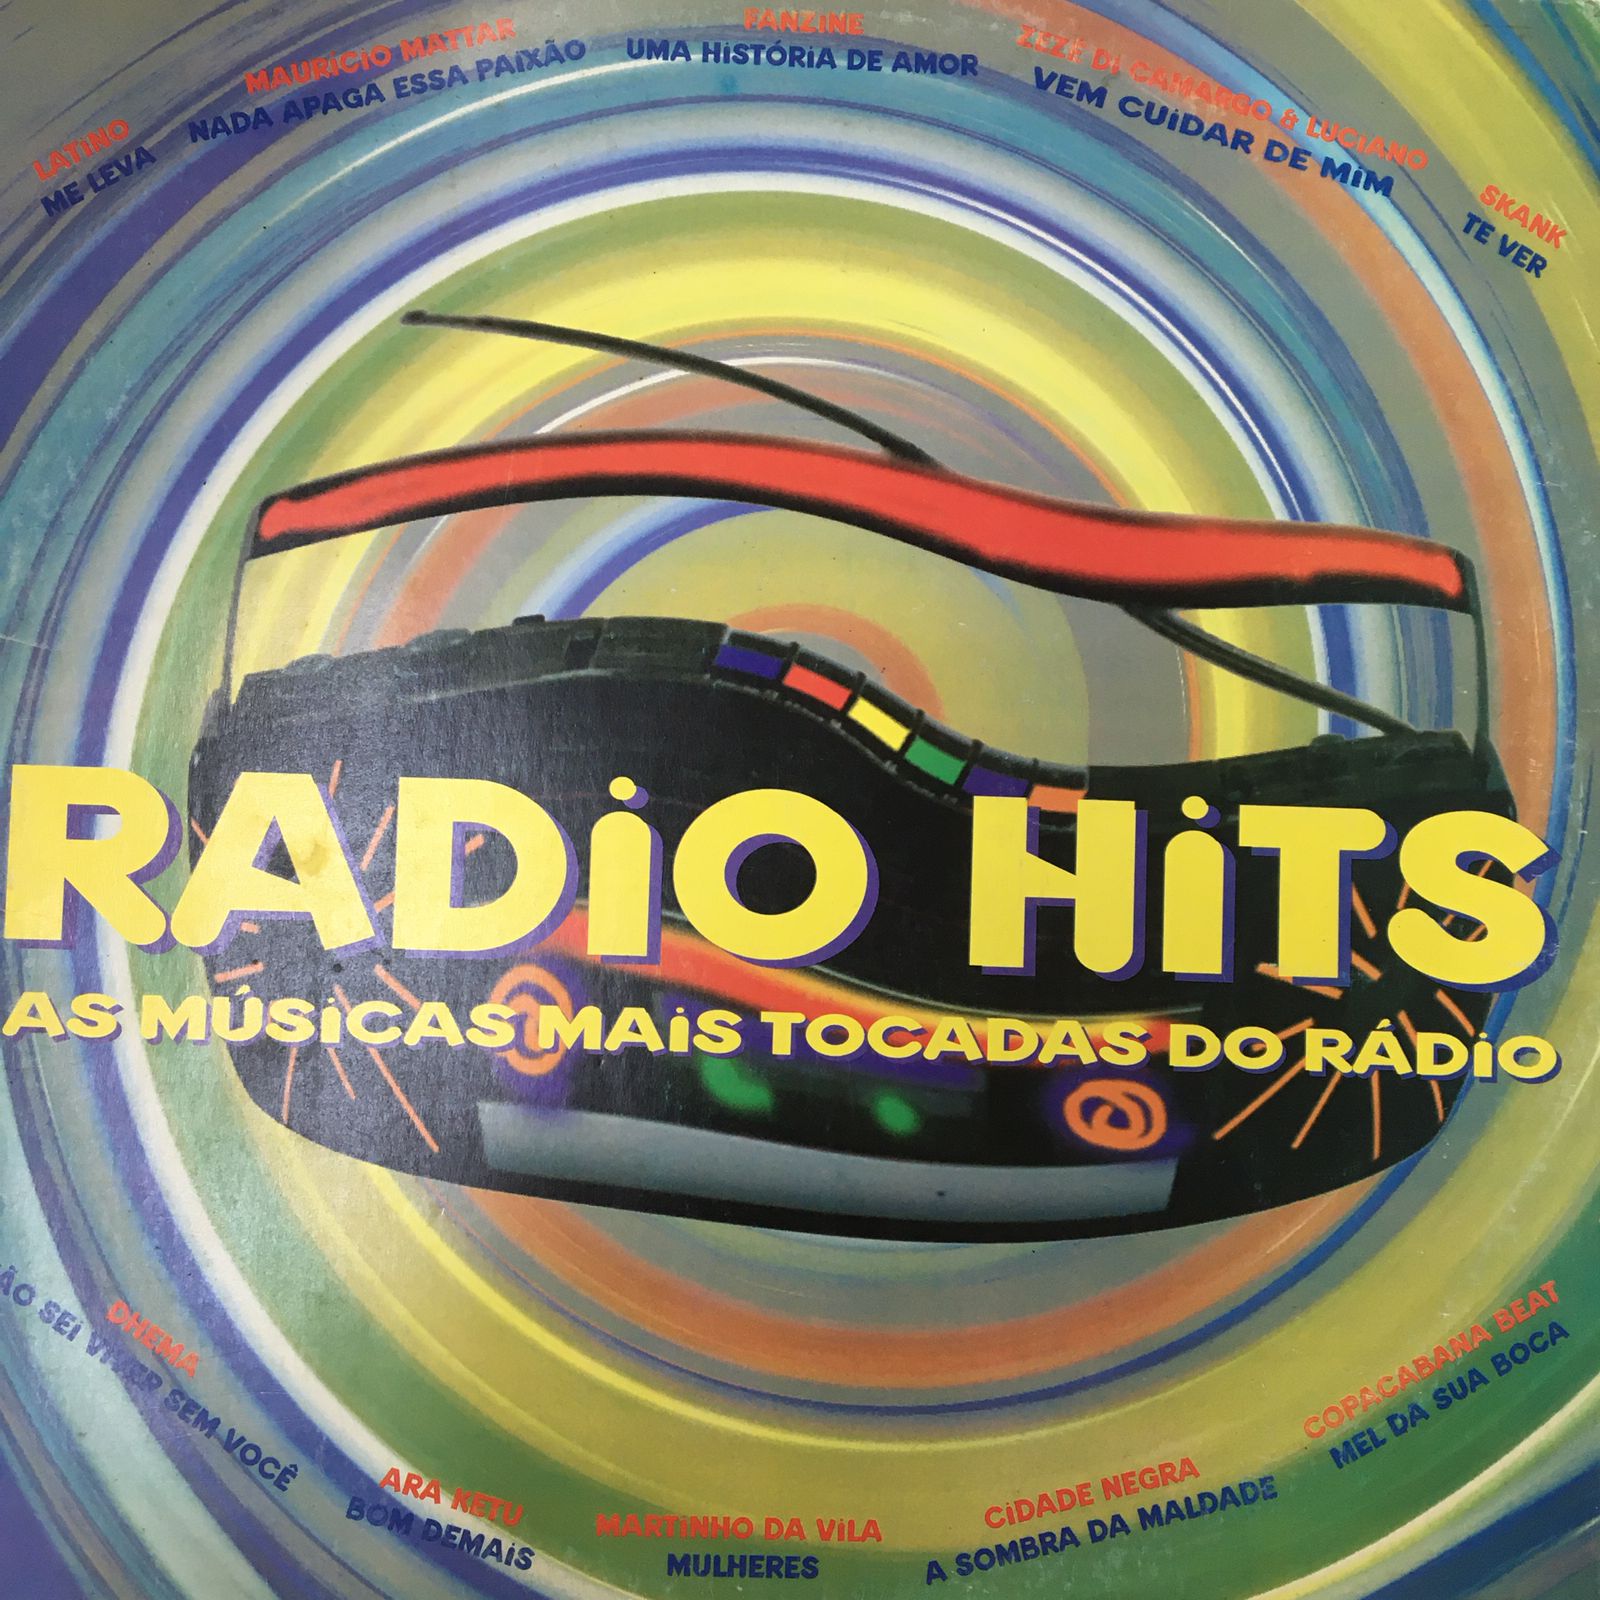 As músicas mais tocadas nas rádios brasileiras nas últimas décadas